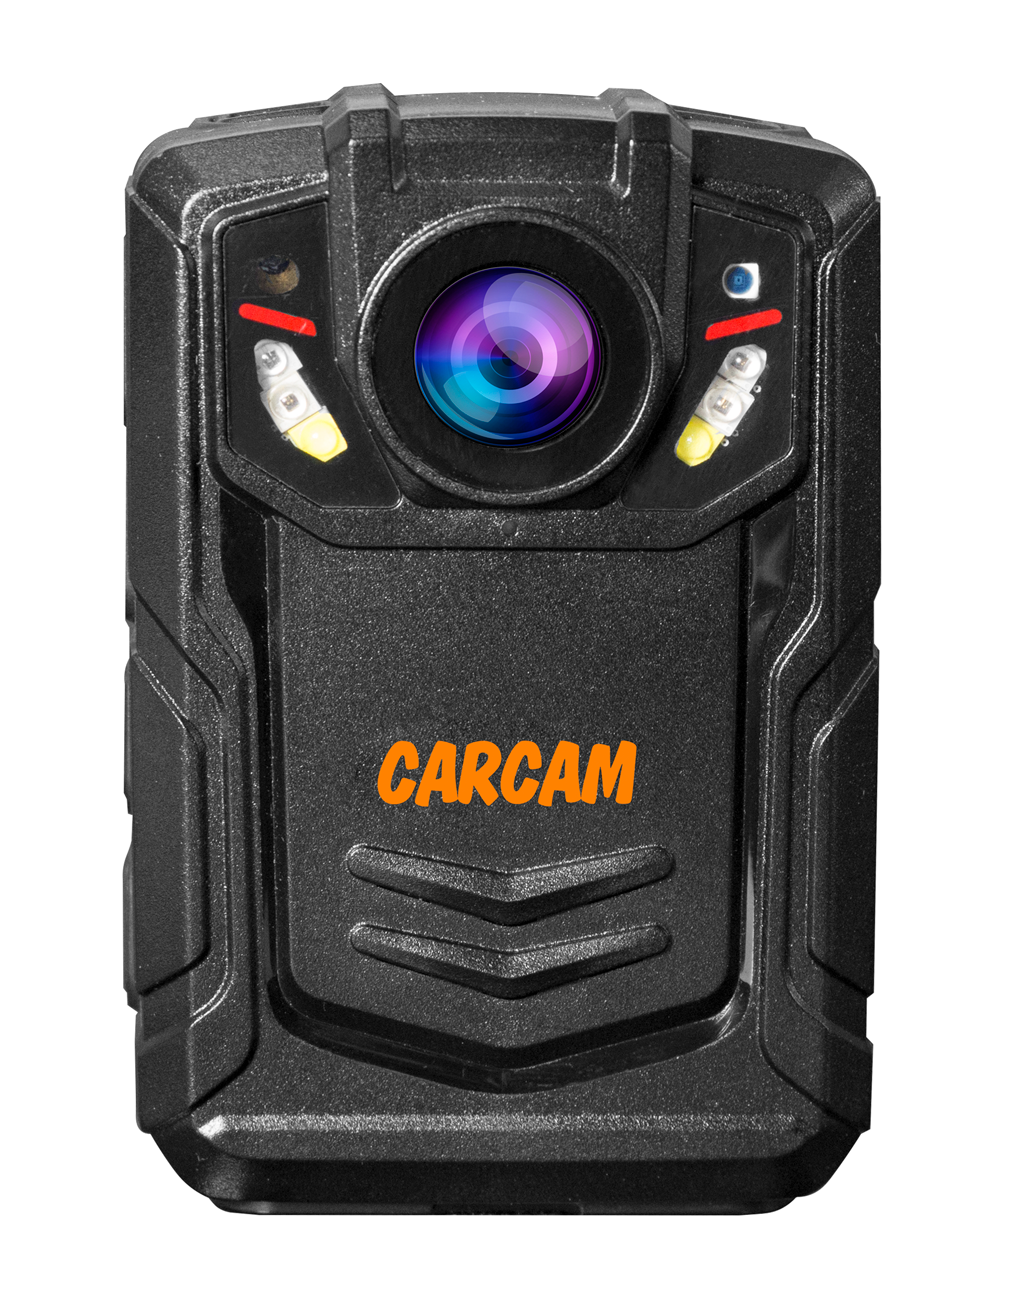 Персональный Quad HD видеорегистратор  CARCAM COMBAT 2S/4G 64GB персональный видеорегистратор carcam combat 2s pro 32gb